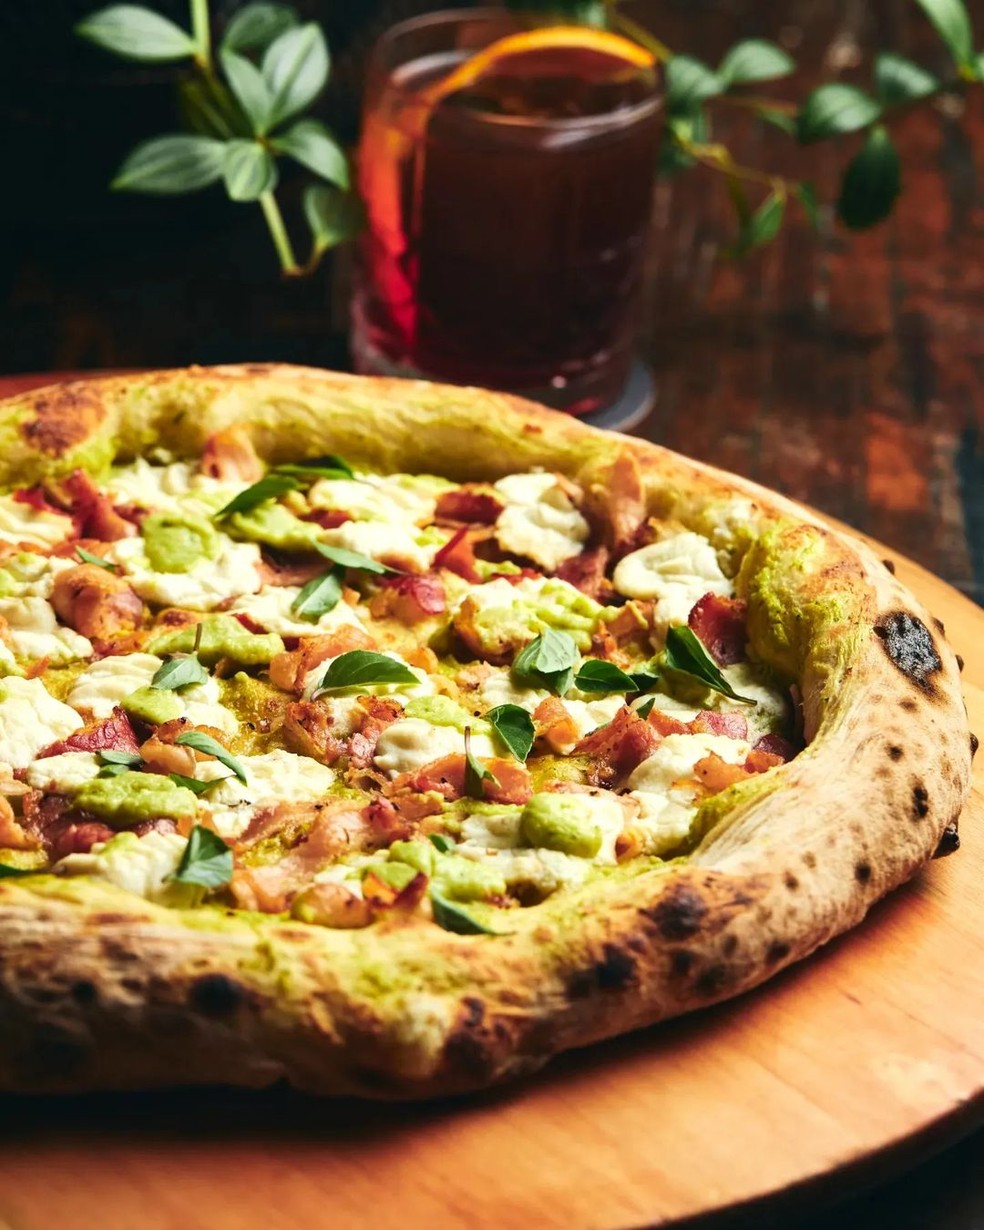 Pizza sabor Crema de Zucchini, Pancetta e Ricotta, da Veridiana. — Foto: Reprodução/Instagram